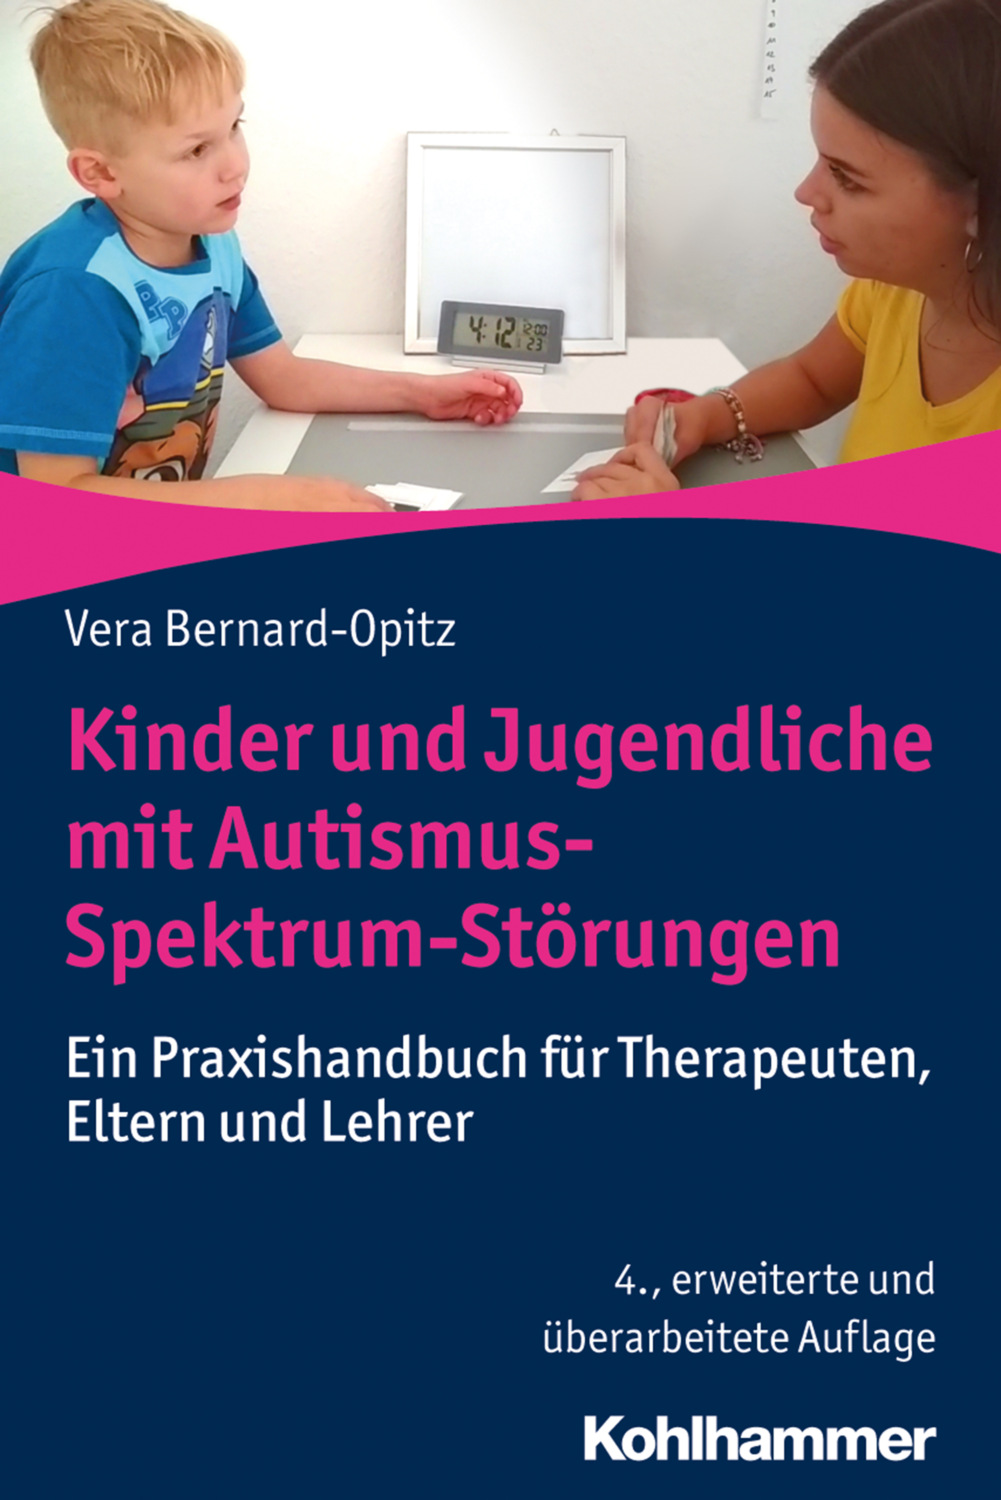 Kinder und Jugendliche mit Autismus-Spektrum-Störungen. Ein Praxishandbuch für Therapeuten, Eltern und Lehrer